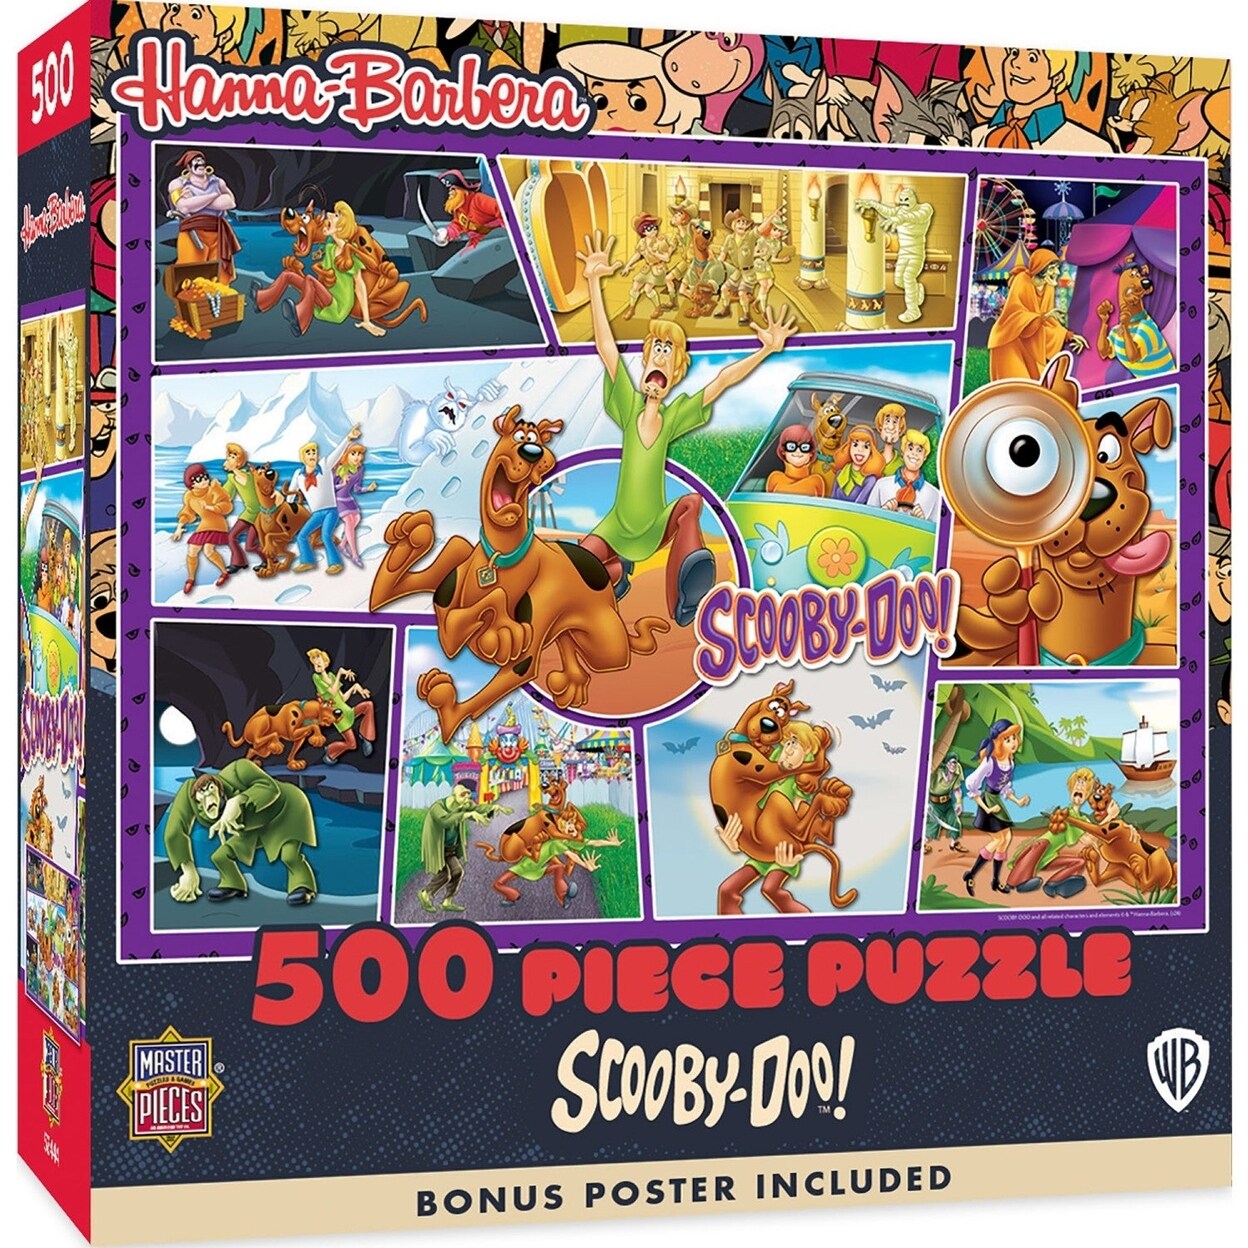 MasterPieces Hanna Barbera - Scooby-Doo! 500 Piece Puzzle